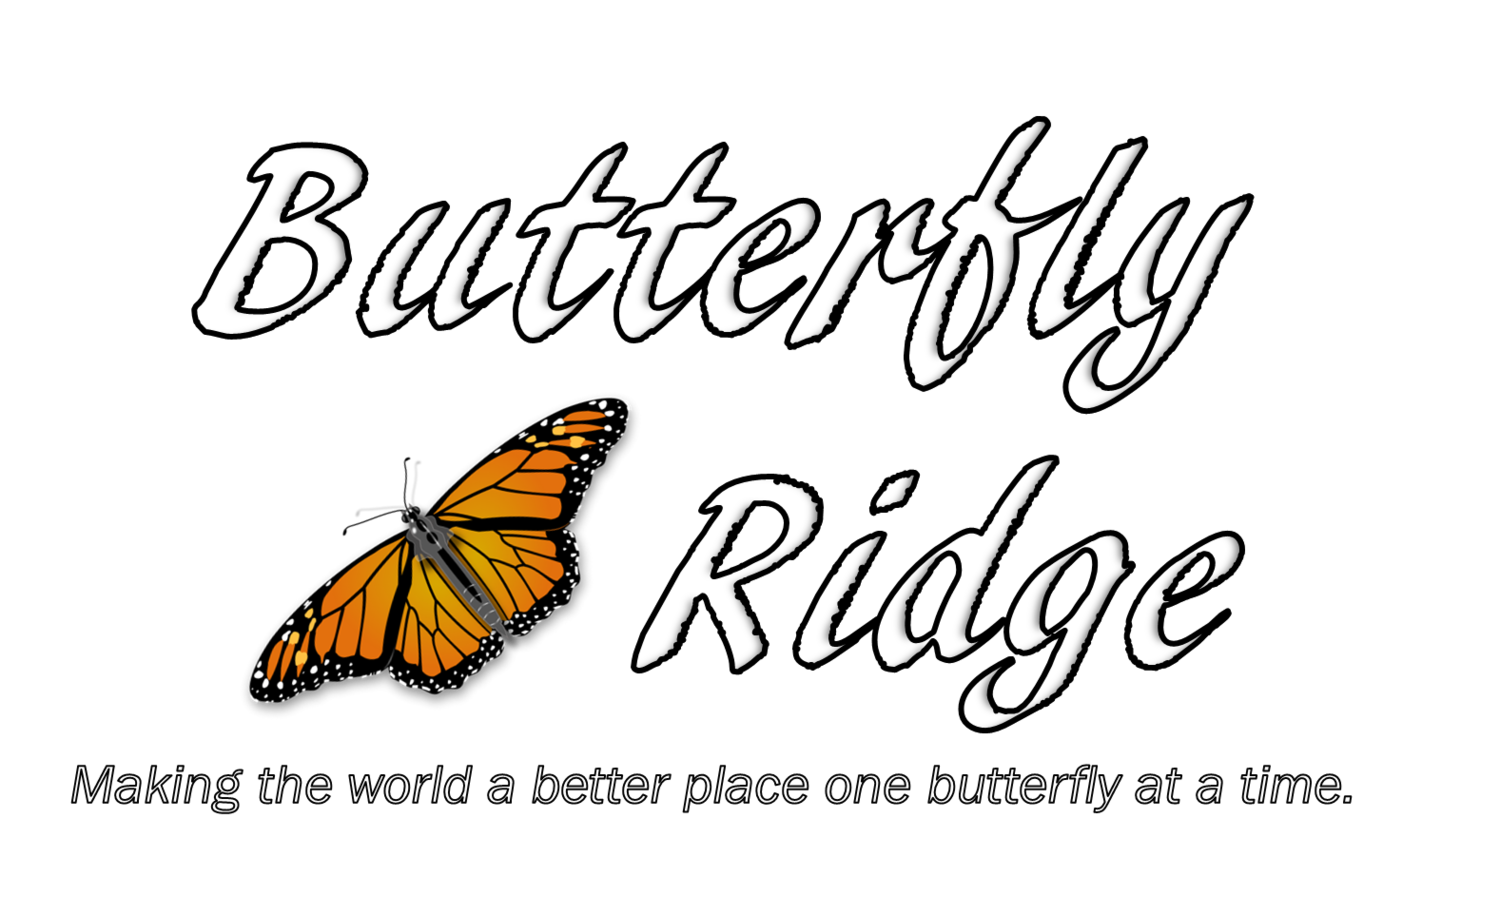 Butterfly Ridge